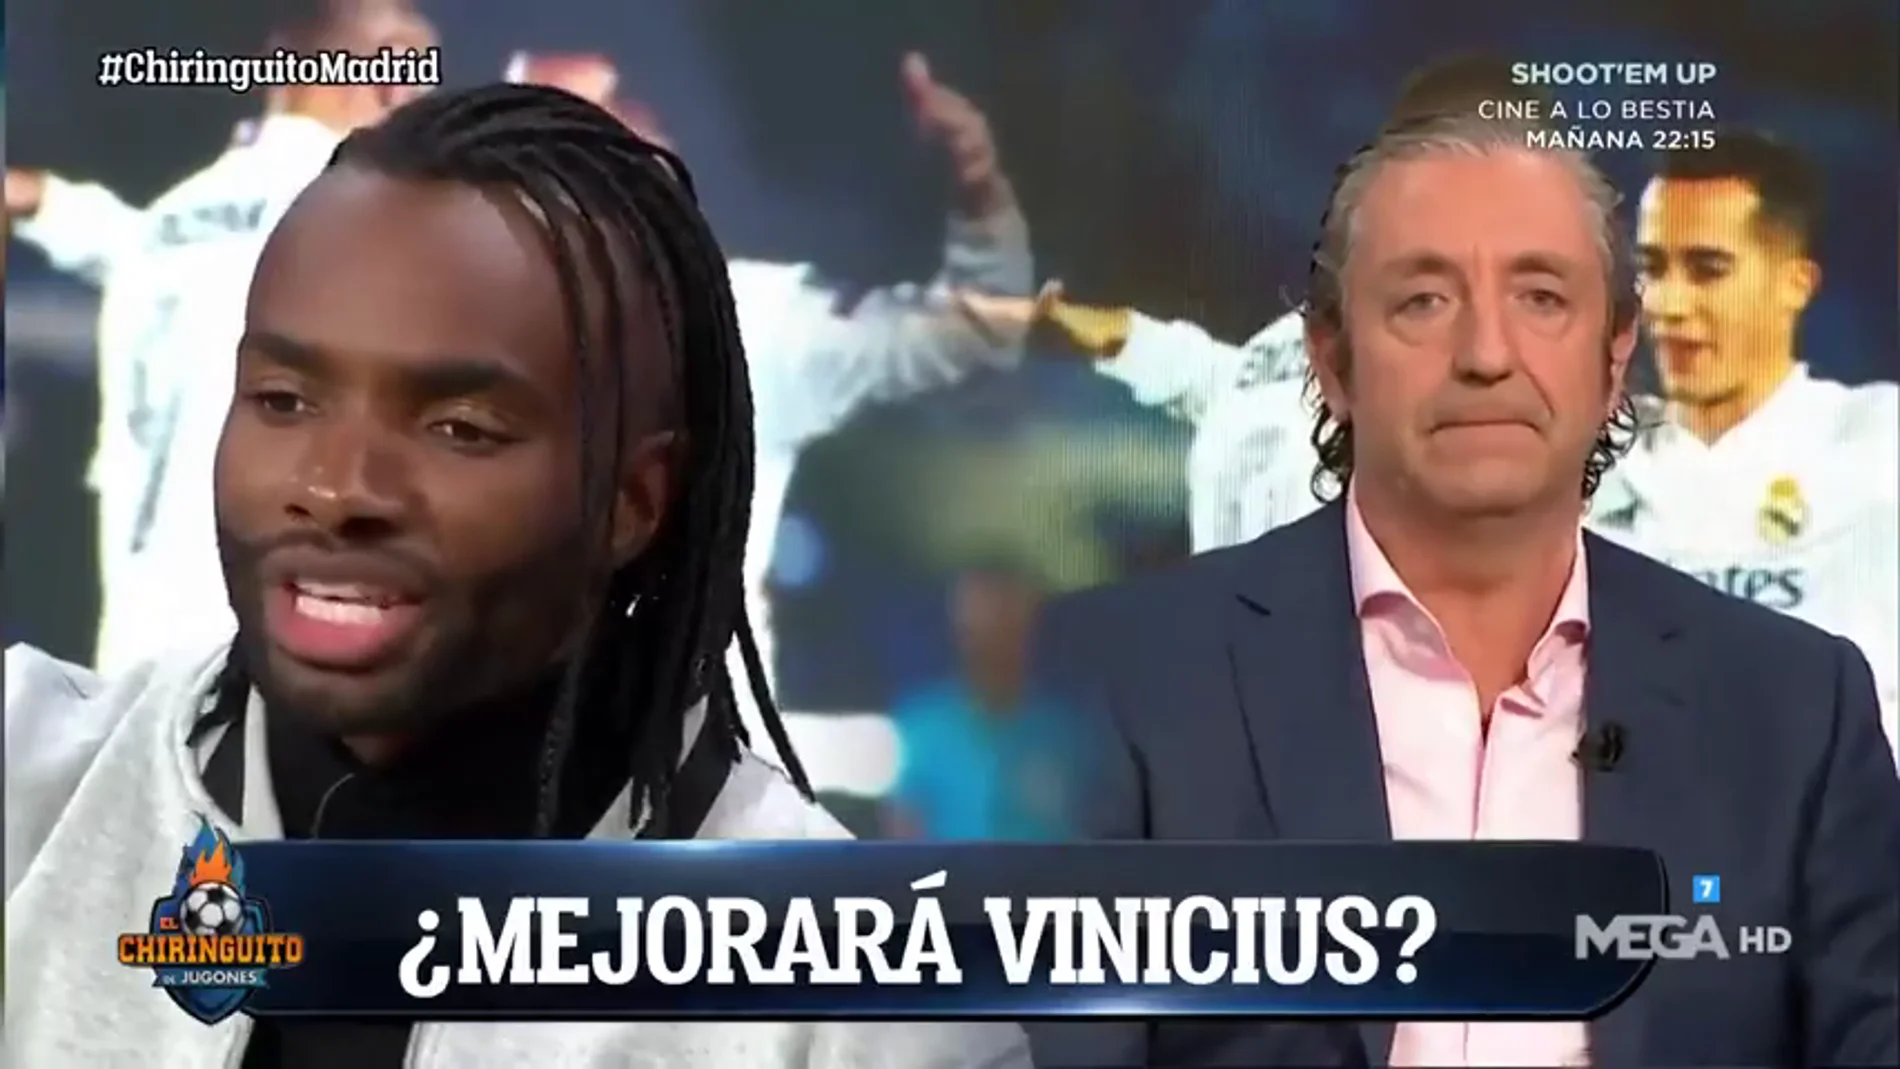 ¿Tiene nivel Vinicius para jugar en el Madrid? Brutal cara a cara entre Pedrerol y Balboa